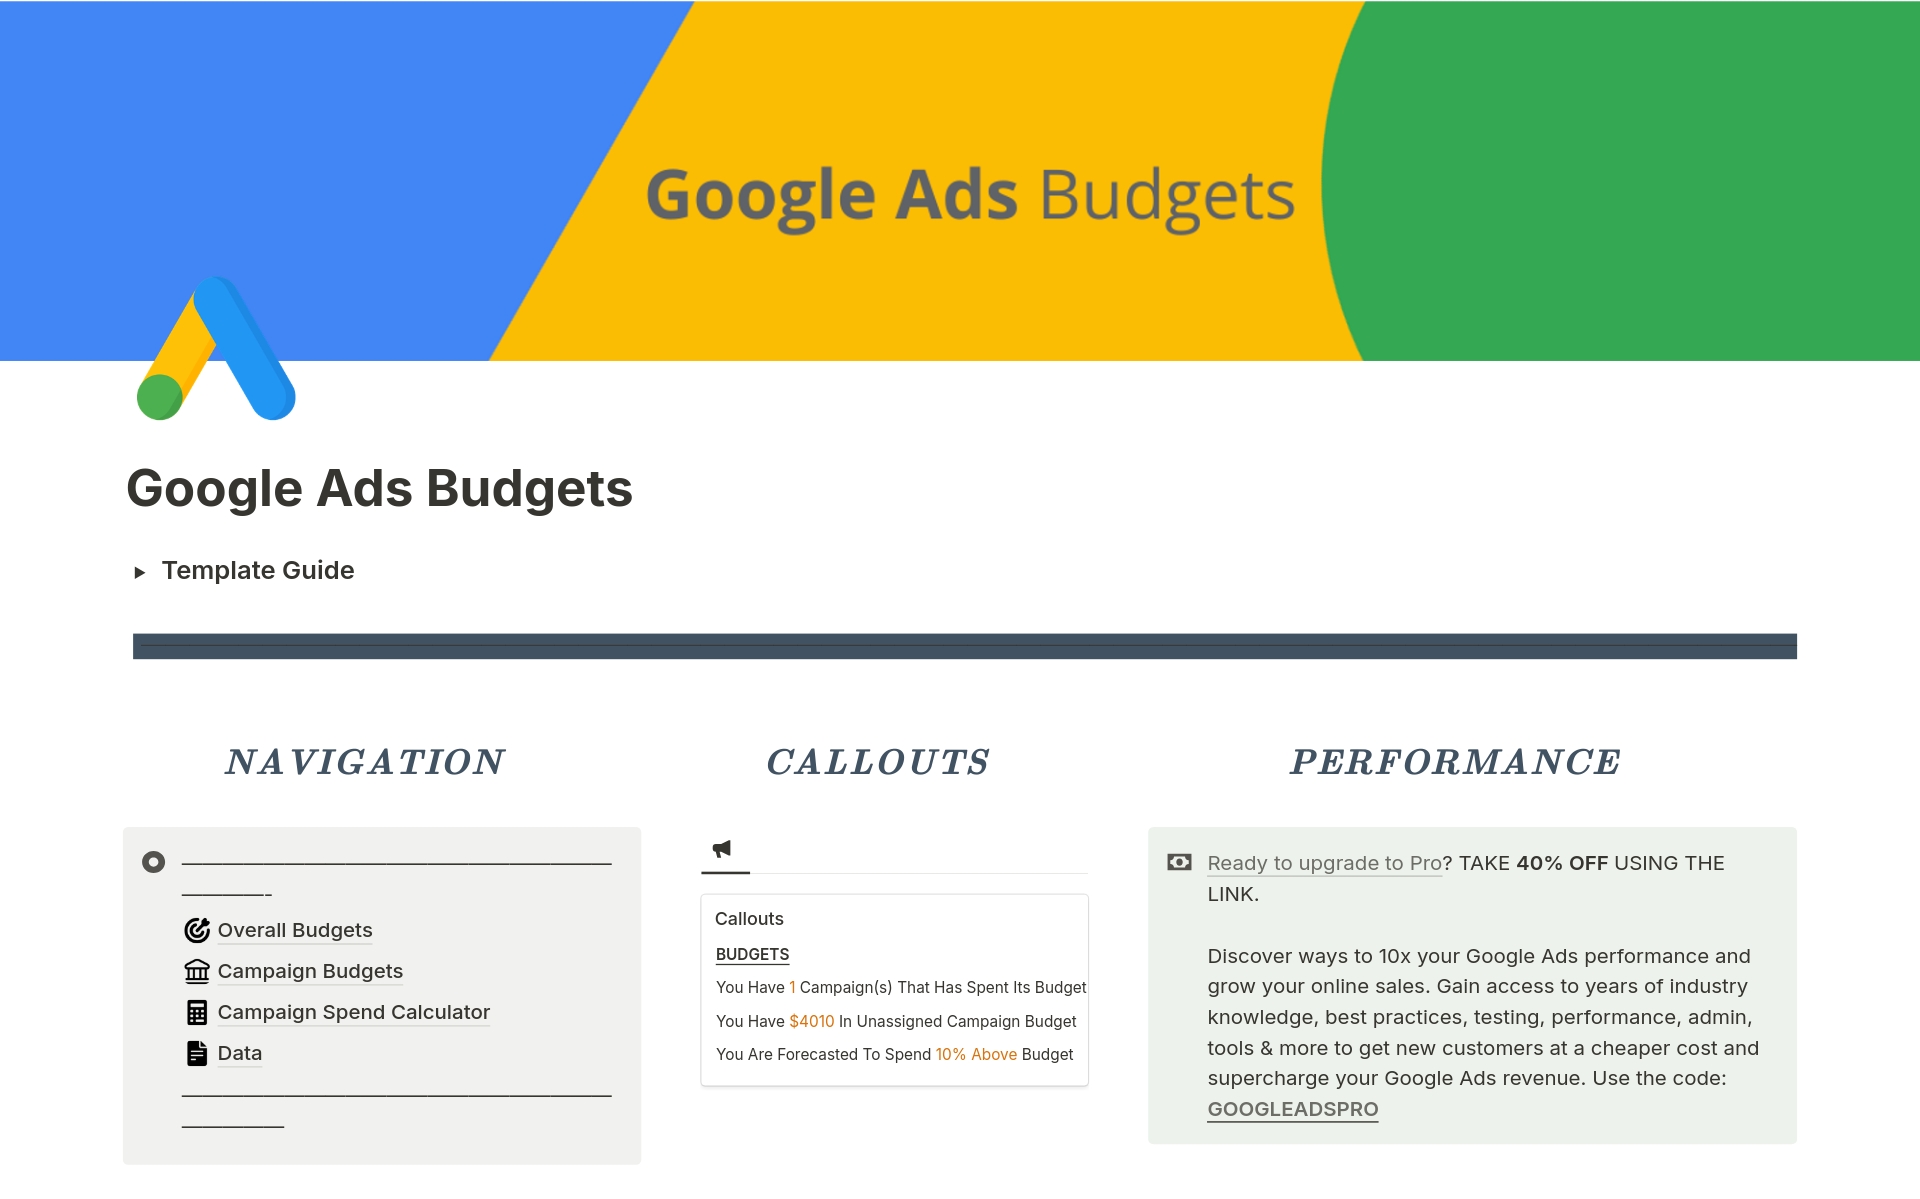 Vista previa de plantilla para Google Ads Budgets